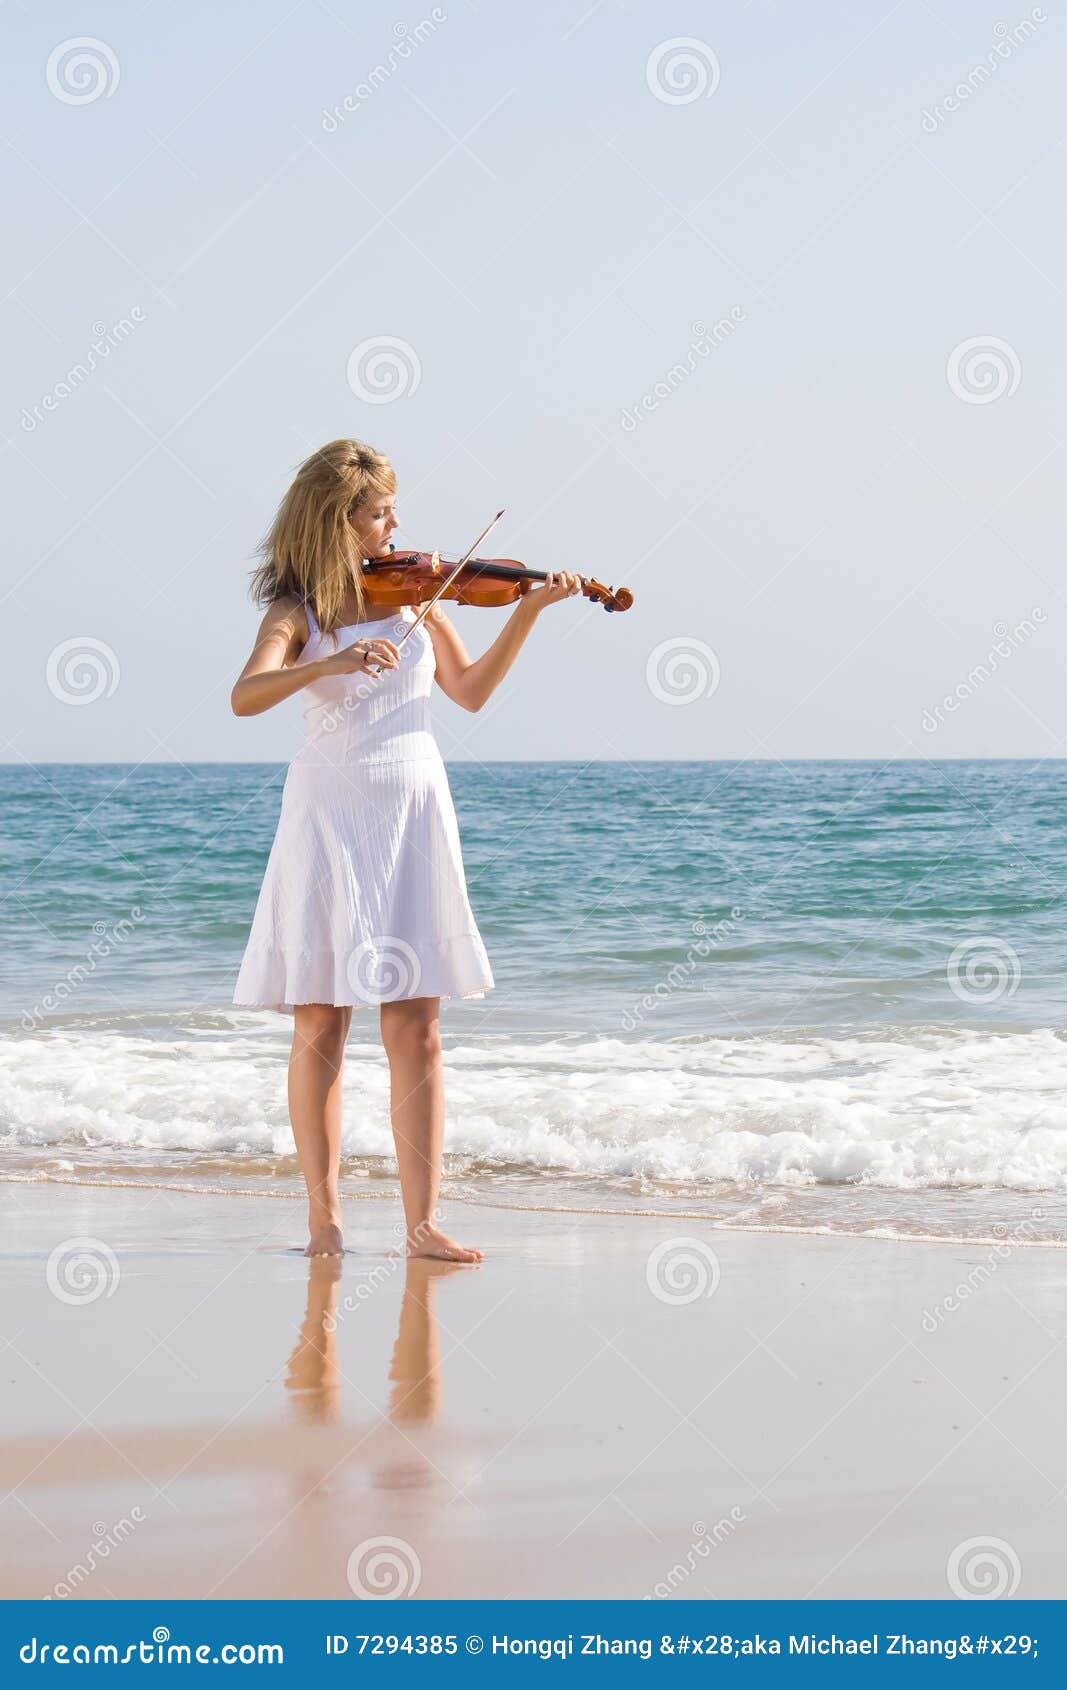 Violín Del Juego Del Violinista De La Mujer En La Playa Imagen de archivo Imagen de elegancia, musical: 7294385